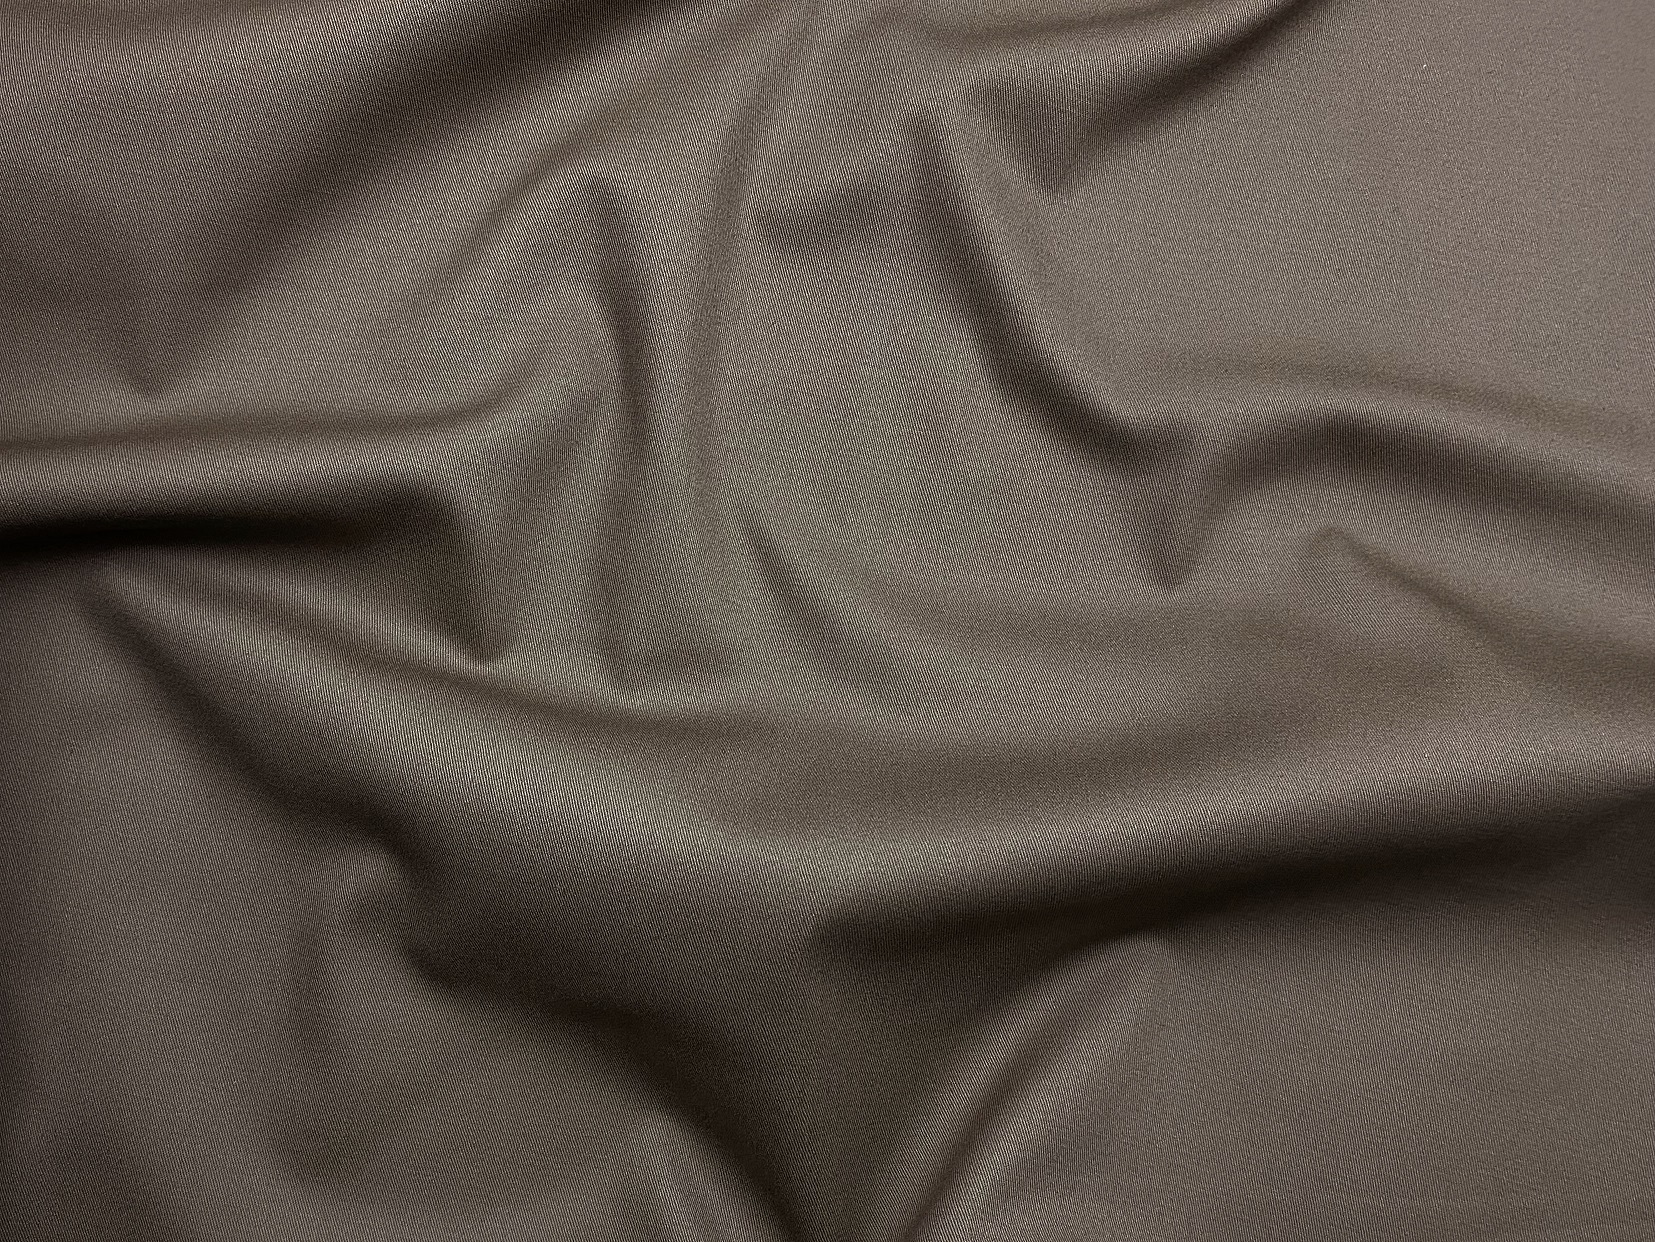 Ткань Хлопок  серо-коричневого цвета однотонная 16845 3